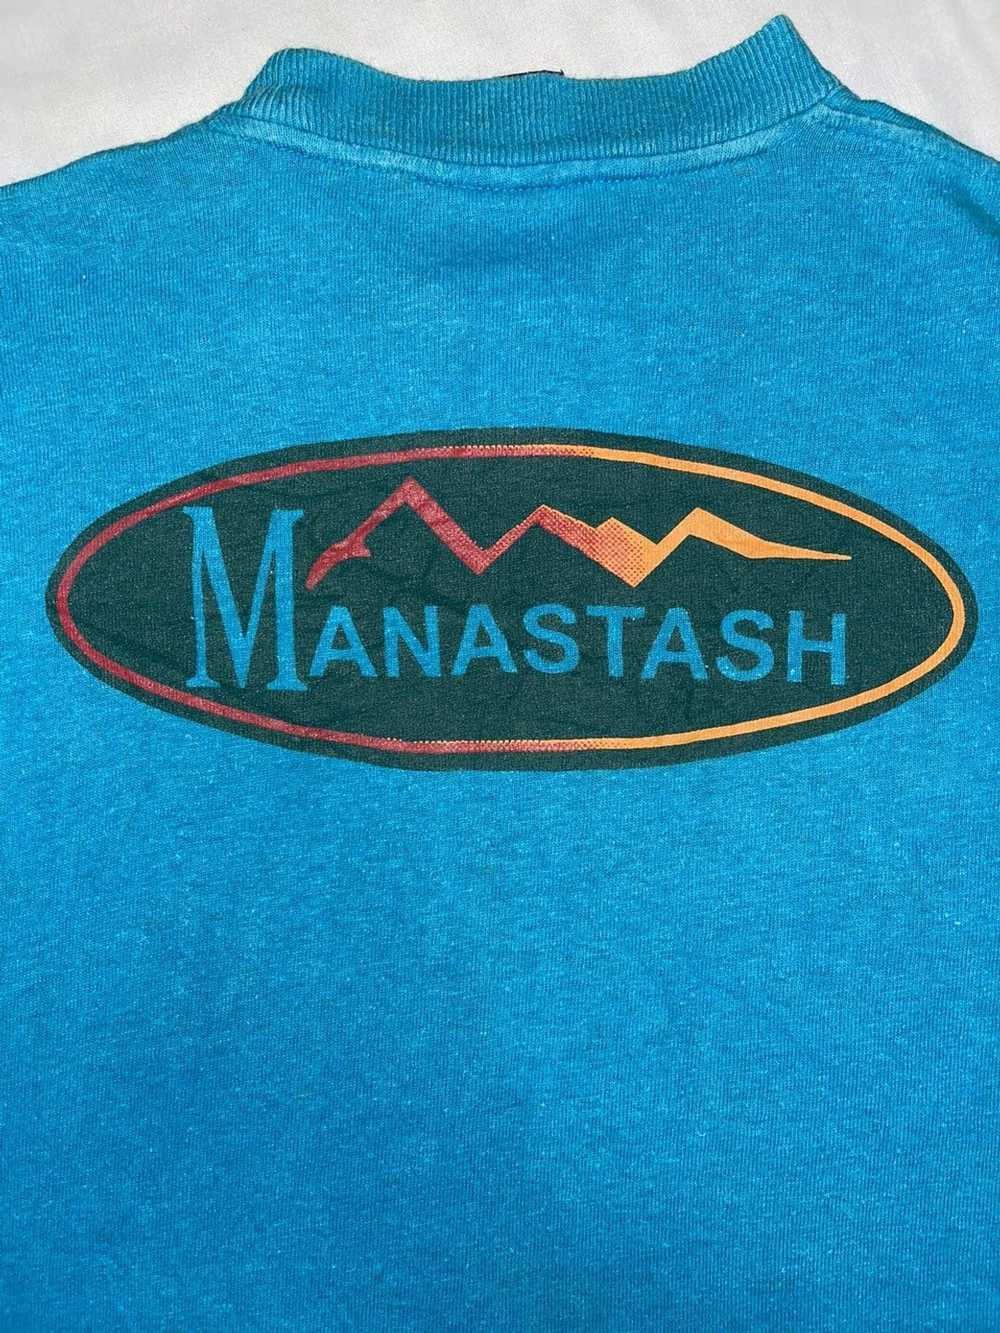 Manastash Manastash hemp tee - image 4